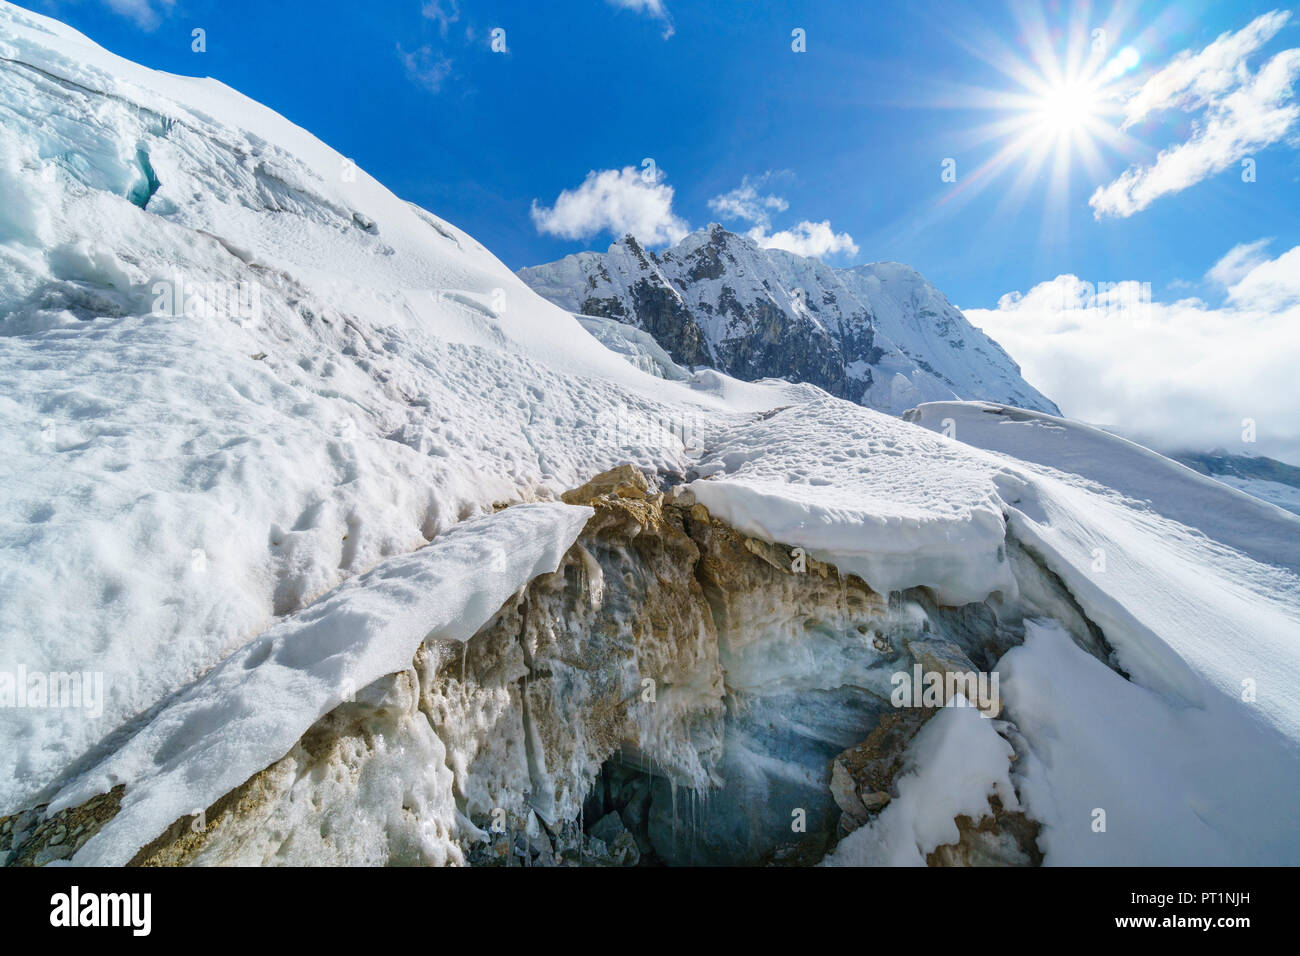 The glacier of Pisco mount in a sunny day, Ancasch, Cordigliera Blanca, Peru Stock Photo